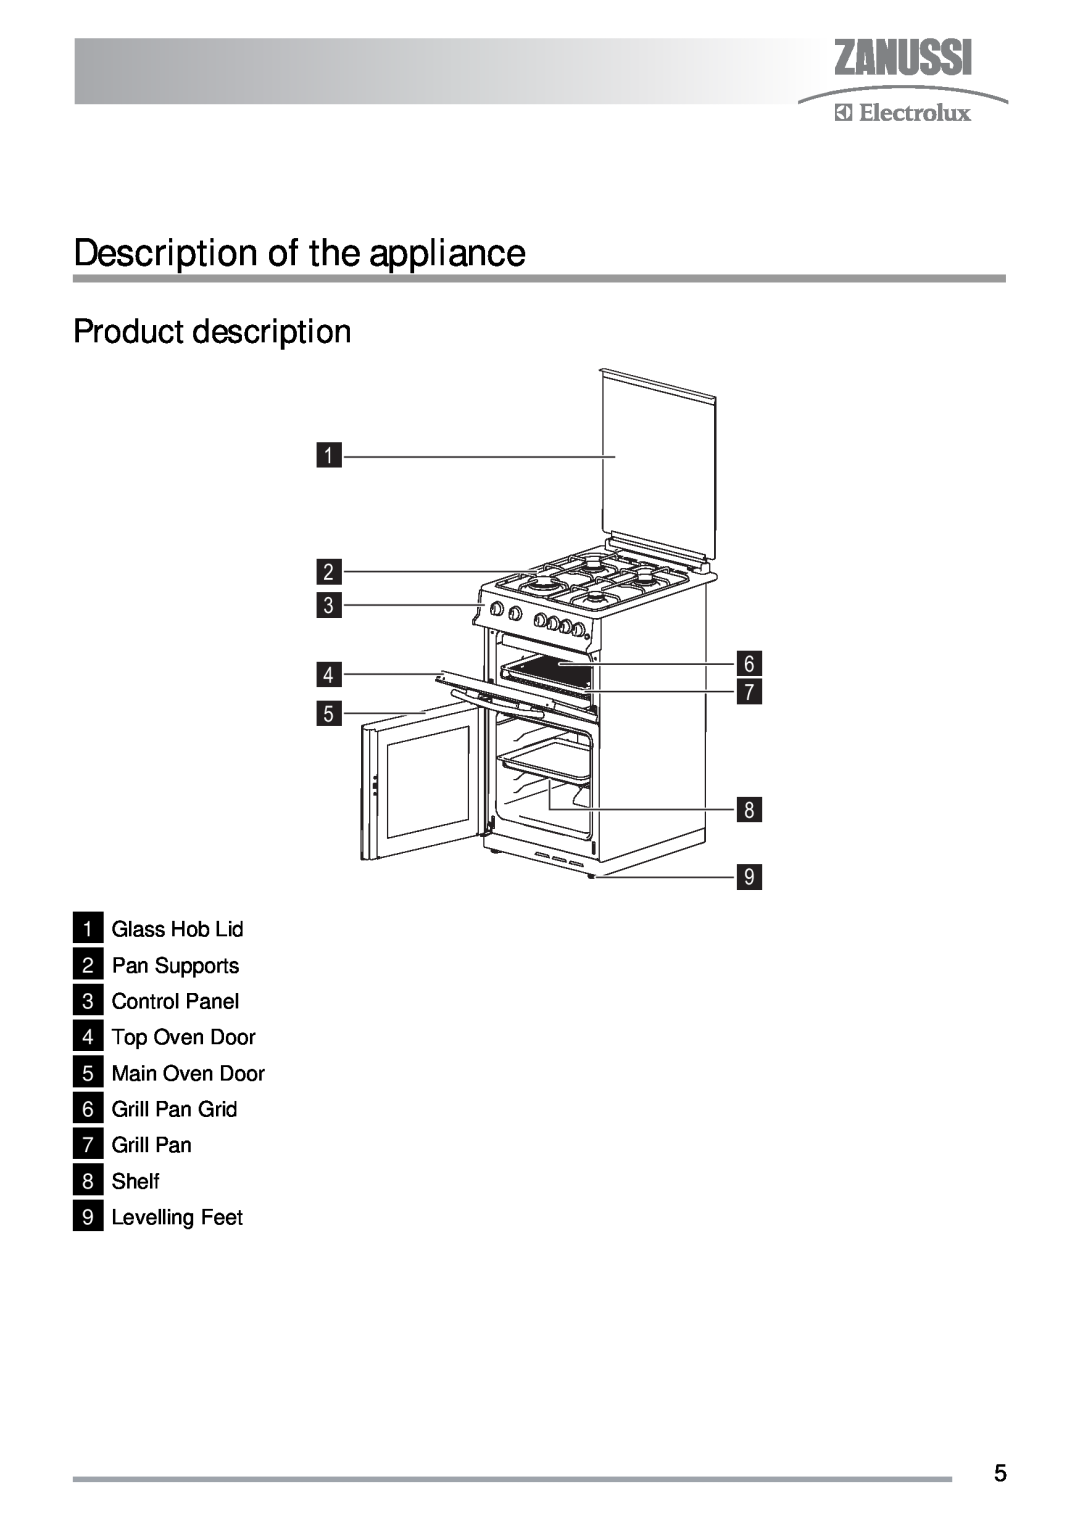 Zanussi ZKG5030 manual Description of the appliance, Product description 